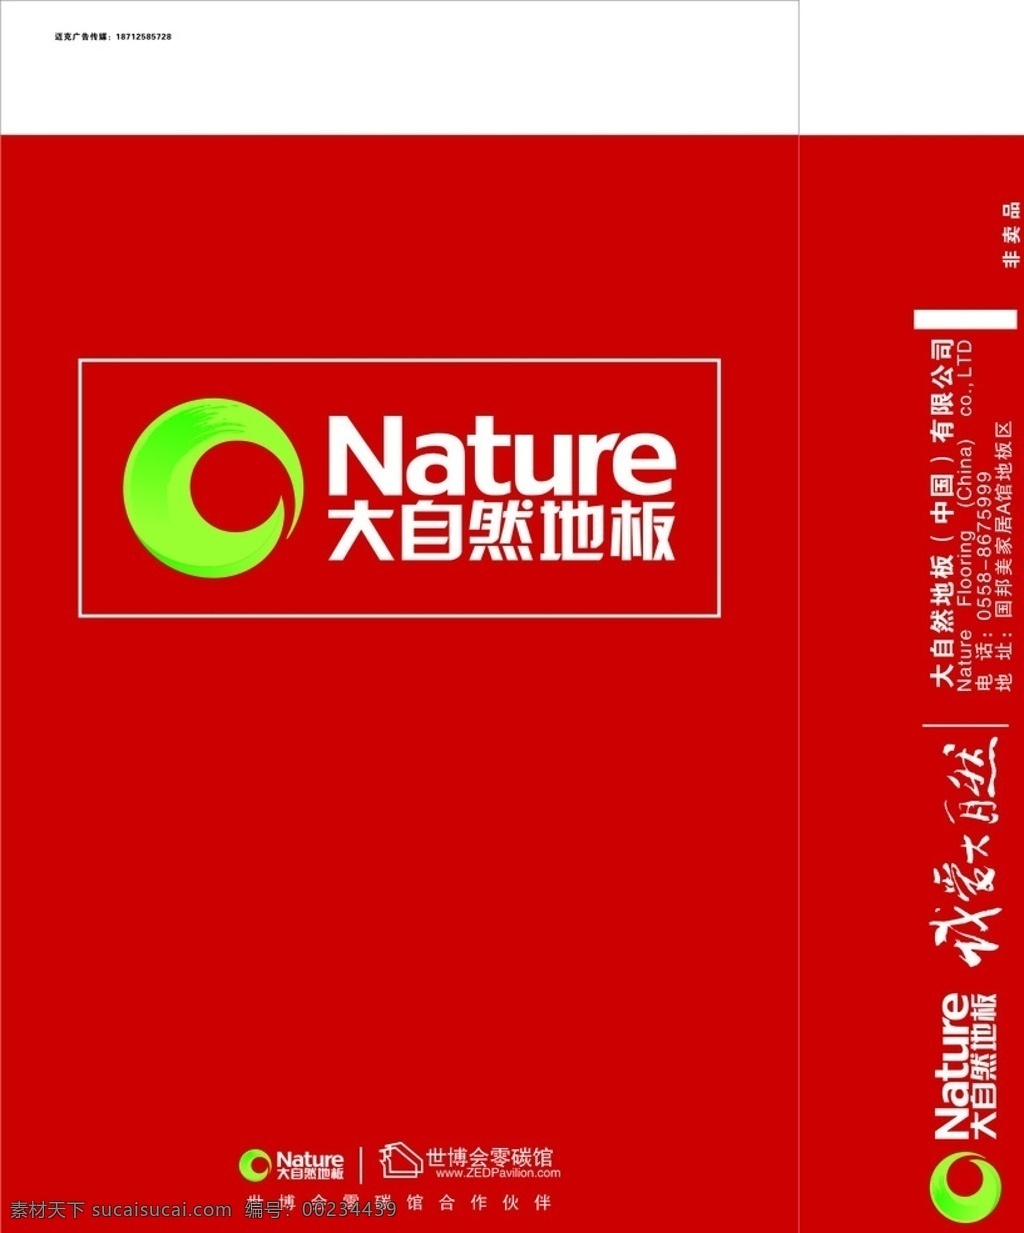 大自然地板 广告礼品 大自然家居 白卡手提袋 广告礼品袋 广告礼品设计